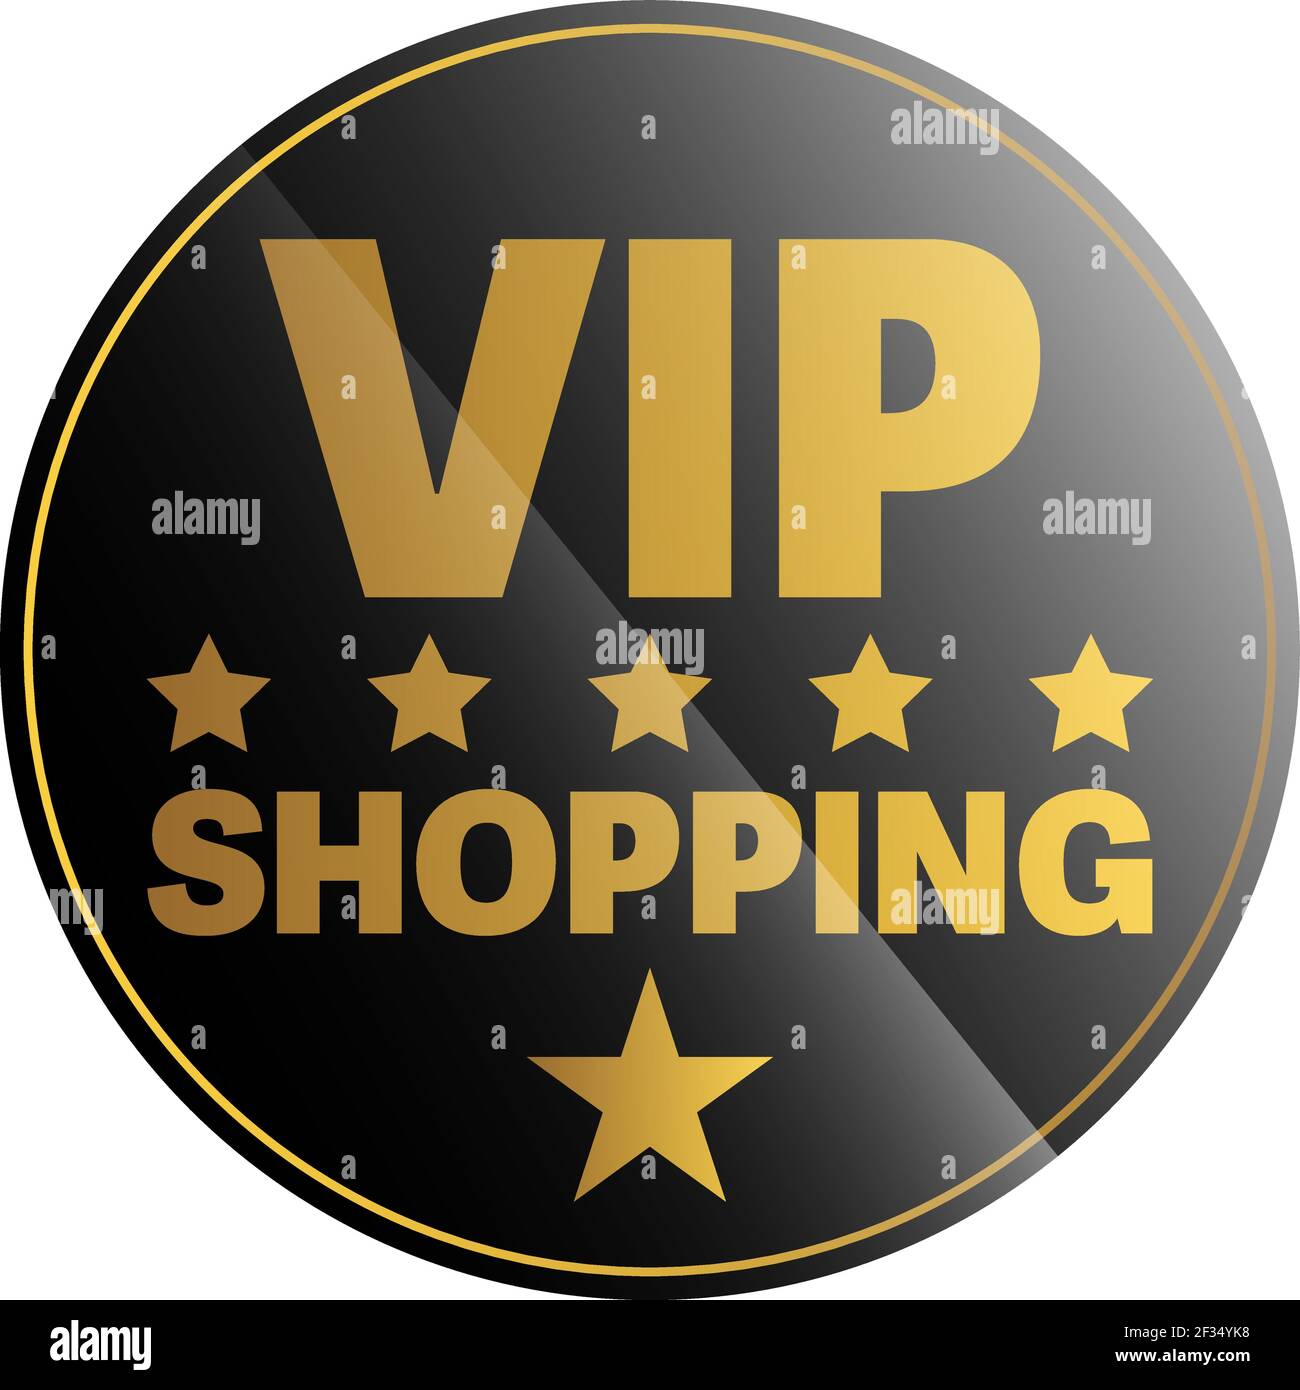 Runde schwarz-goldene VIP-SHOPPING-Aufkleber oder -Schild, exklusive private Shopping-Vektor-Illustration Stock Vektor